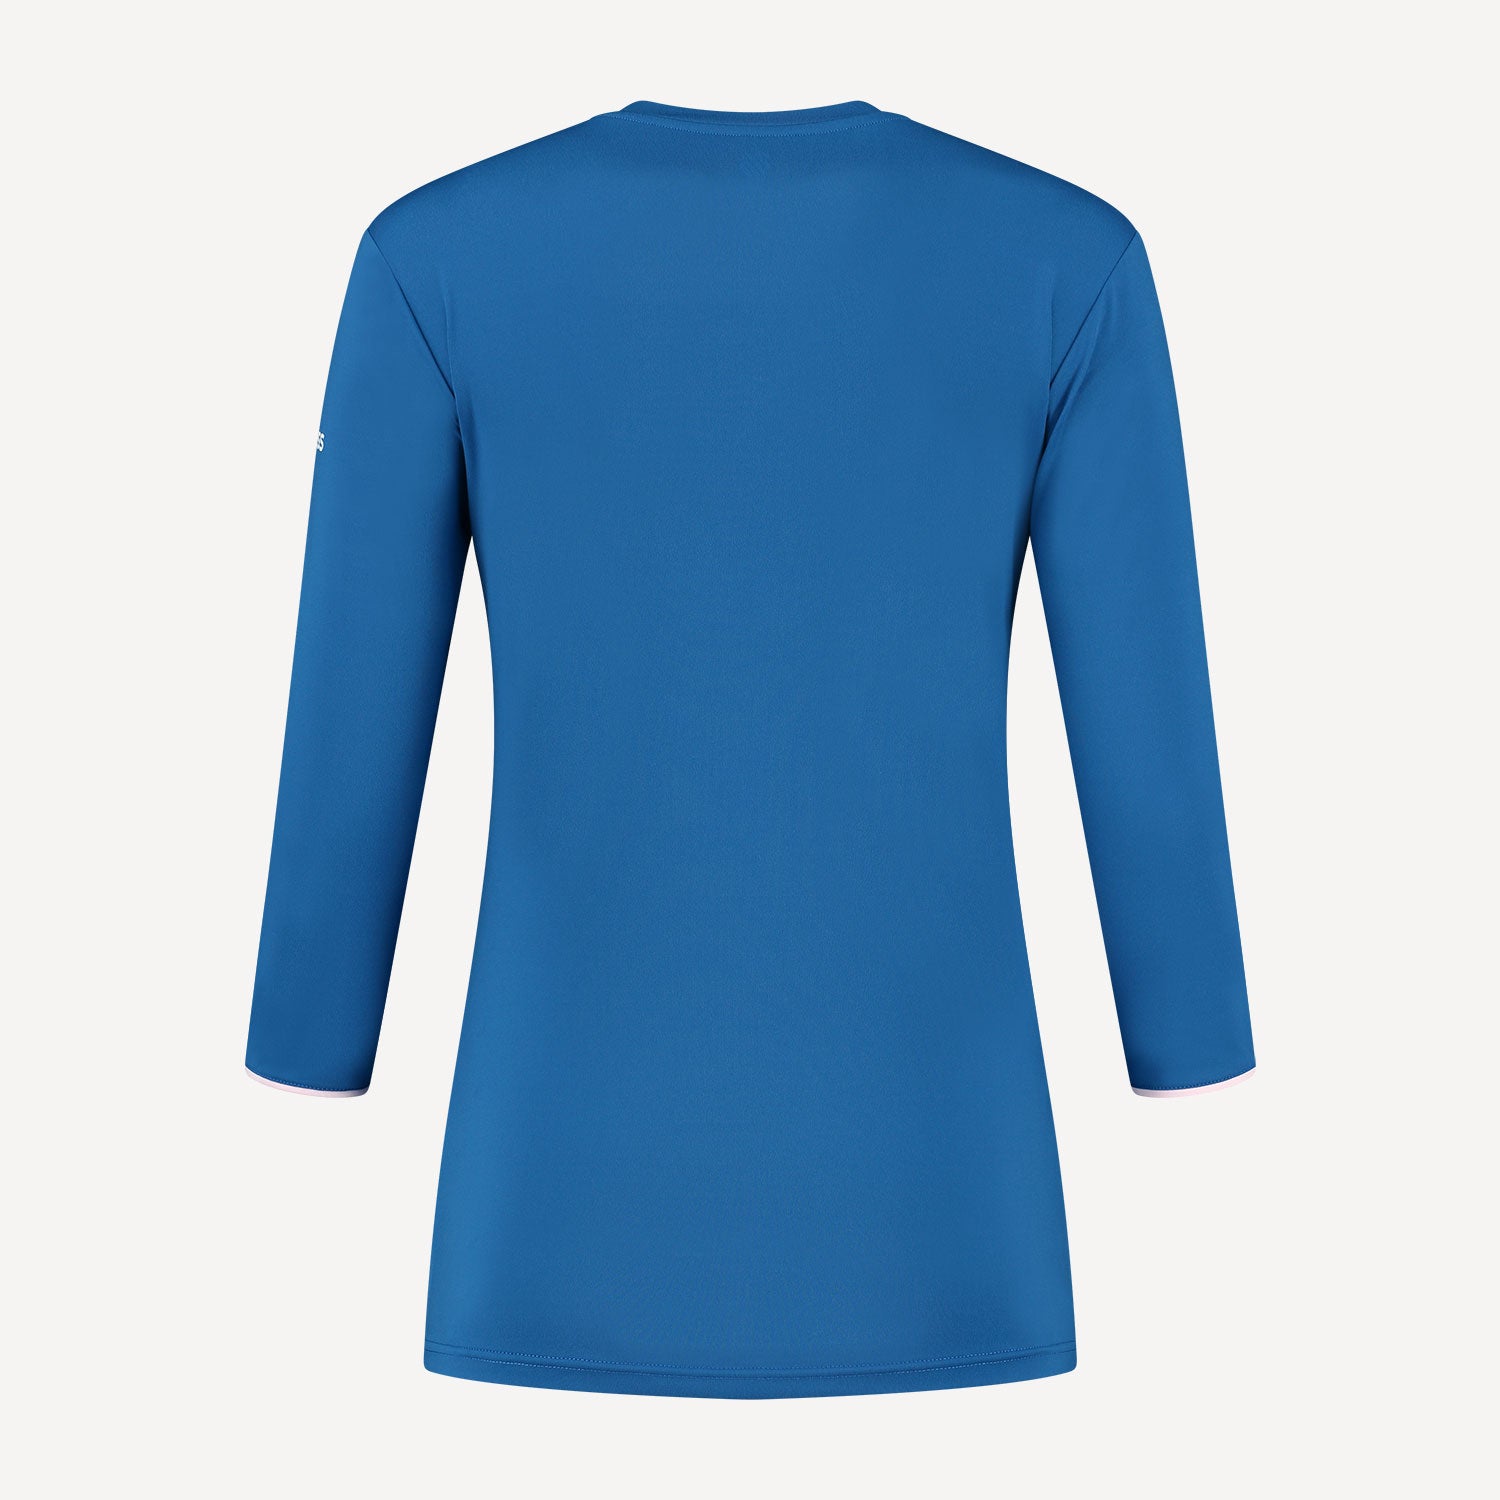 K-Swiss Hypercourt Women's Long-Sleeve Tennis Shirt Blue (2)